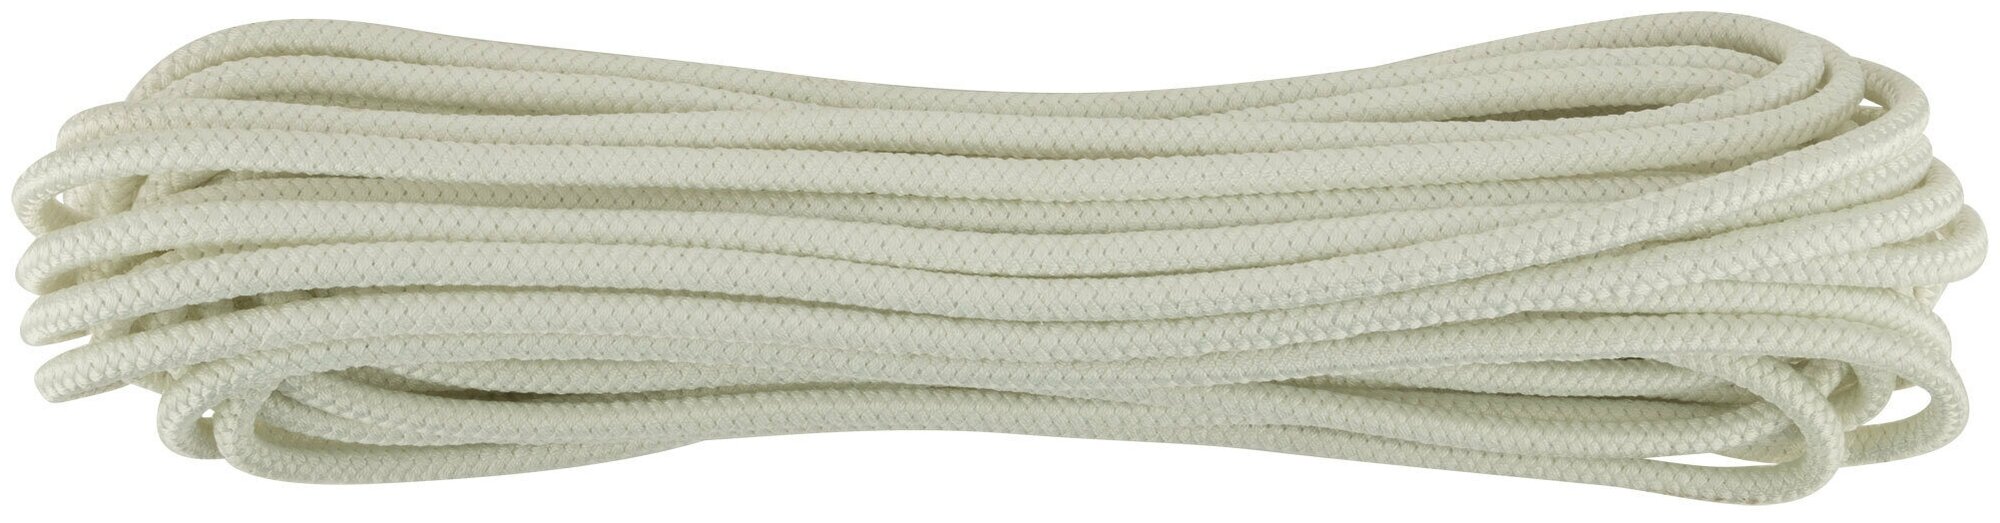 Фал капроновый плетеный 24-х прядный с сердечником 12 мм х 20 м, р/н= 950 кгс 68419